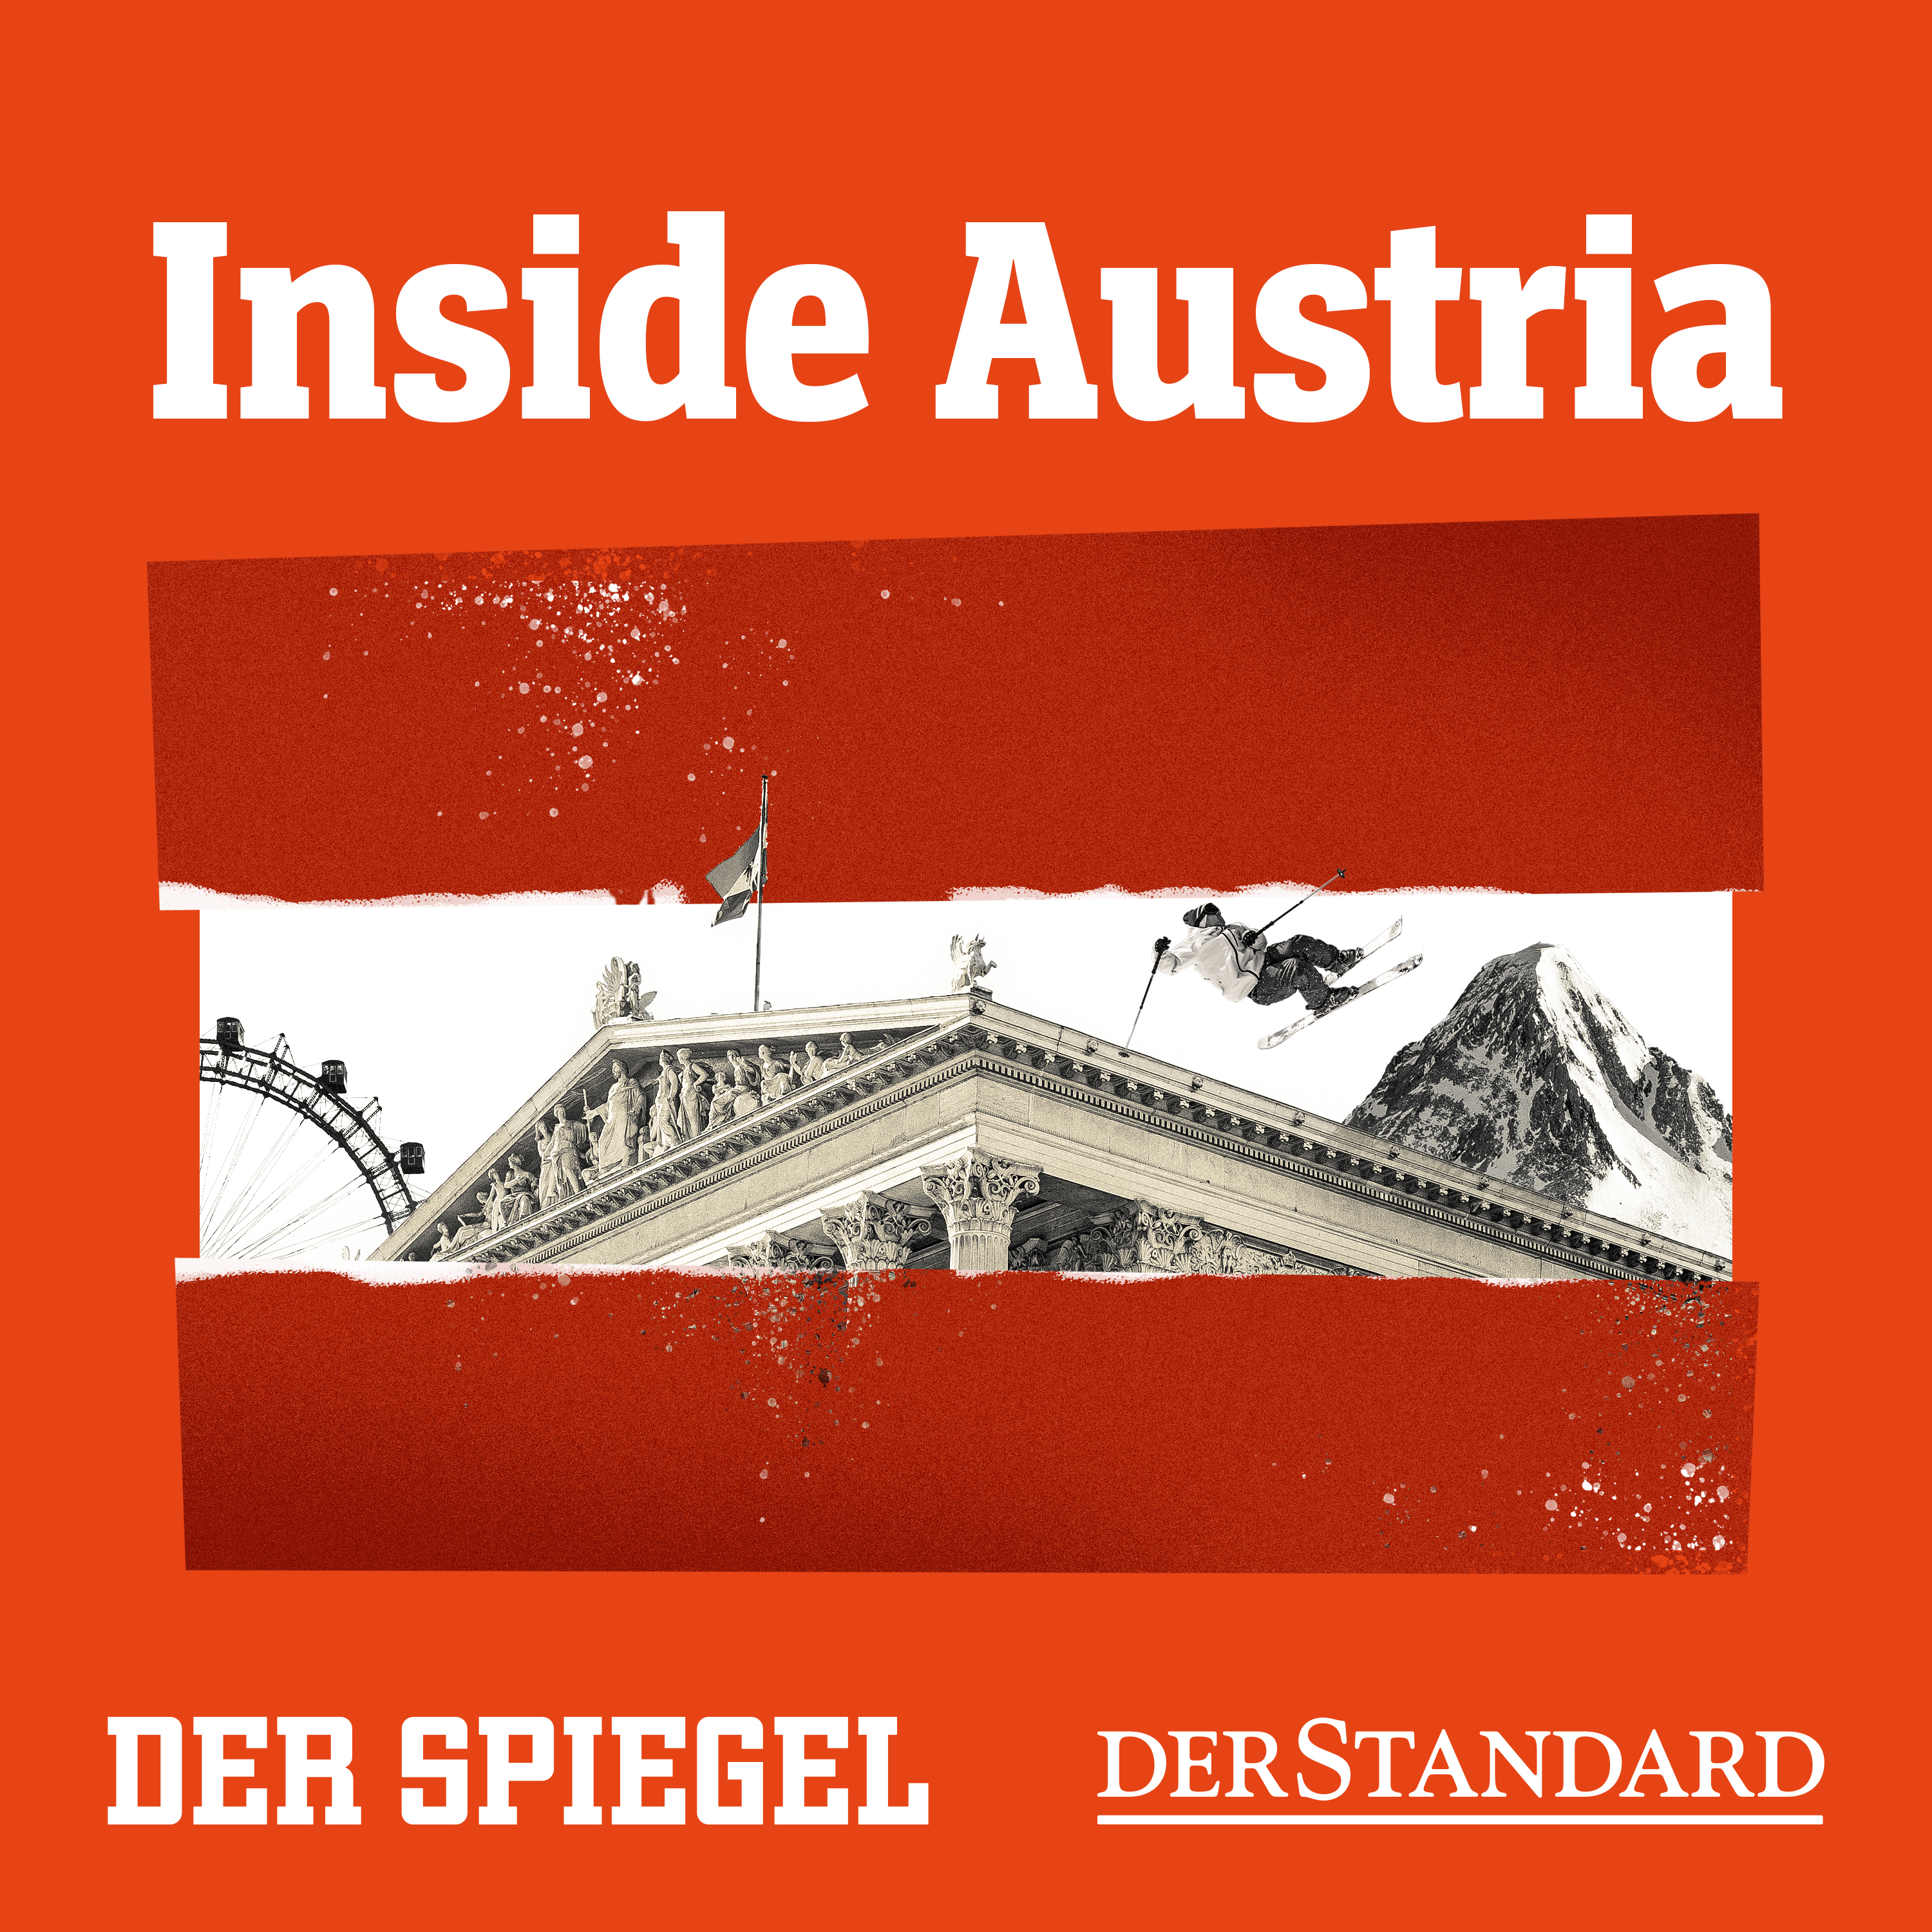 Andreas Babler: Vom linken Underdog zum Kanzler?